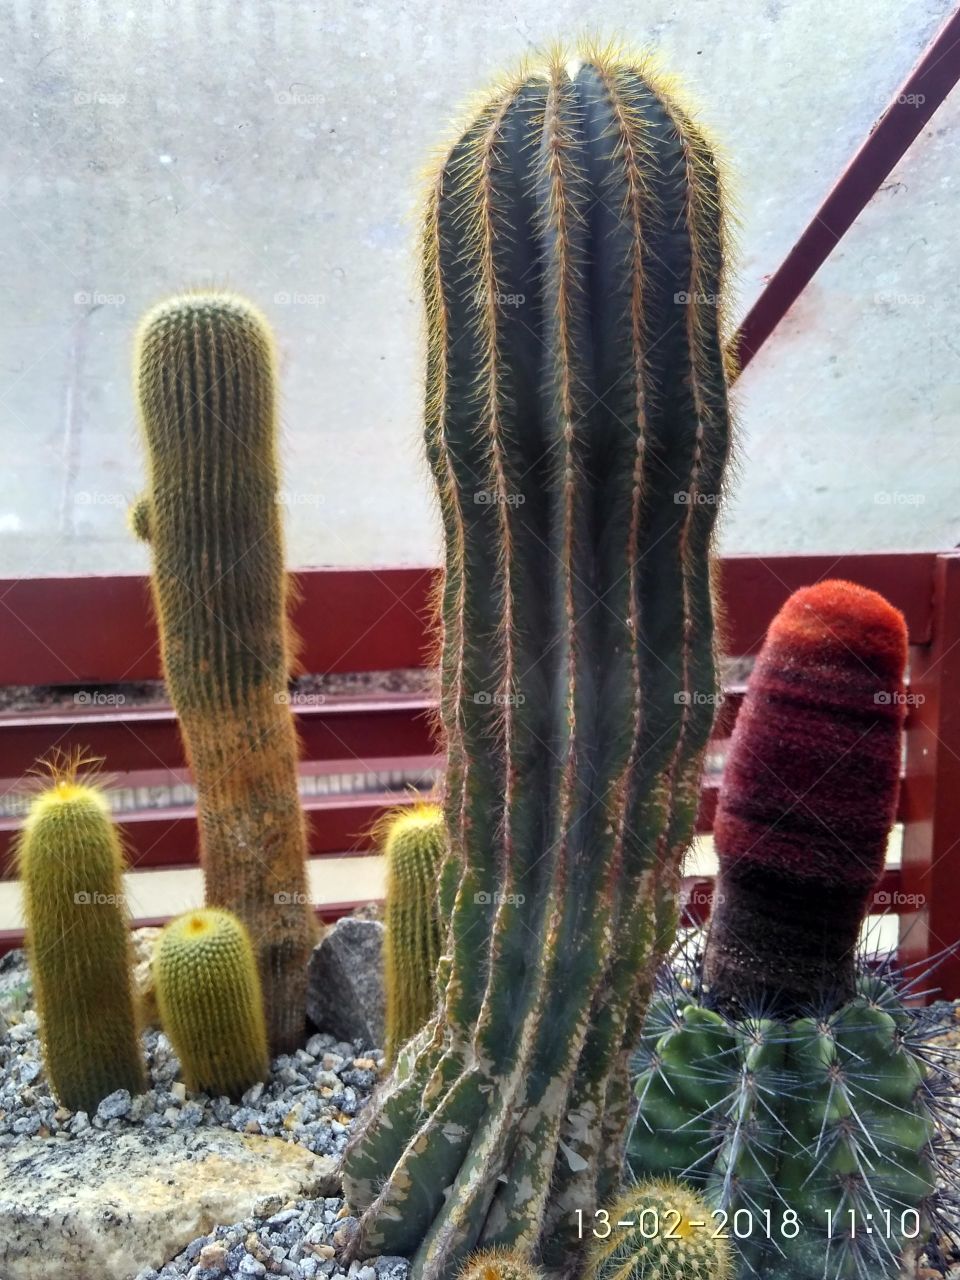 cactus 2.0